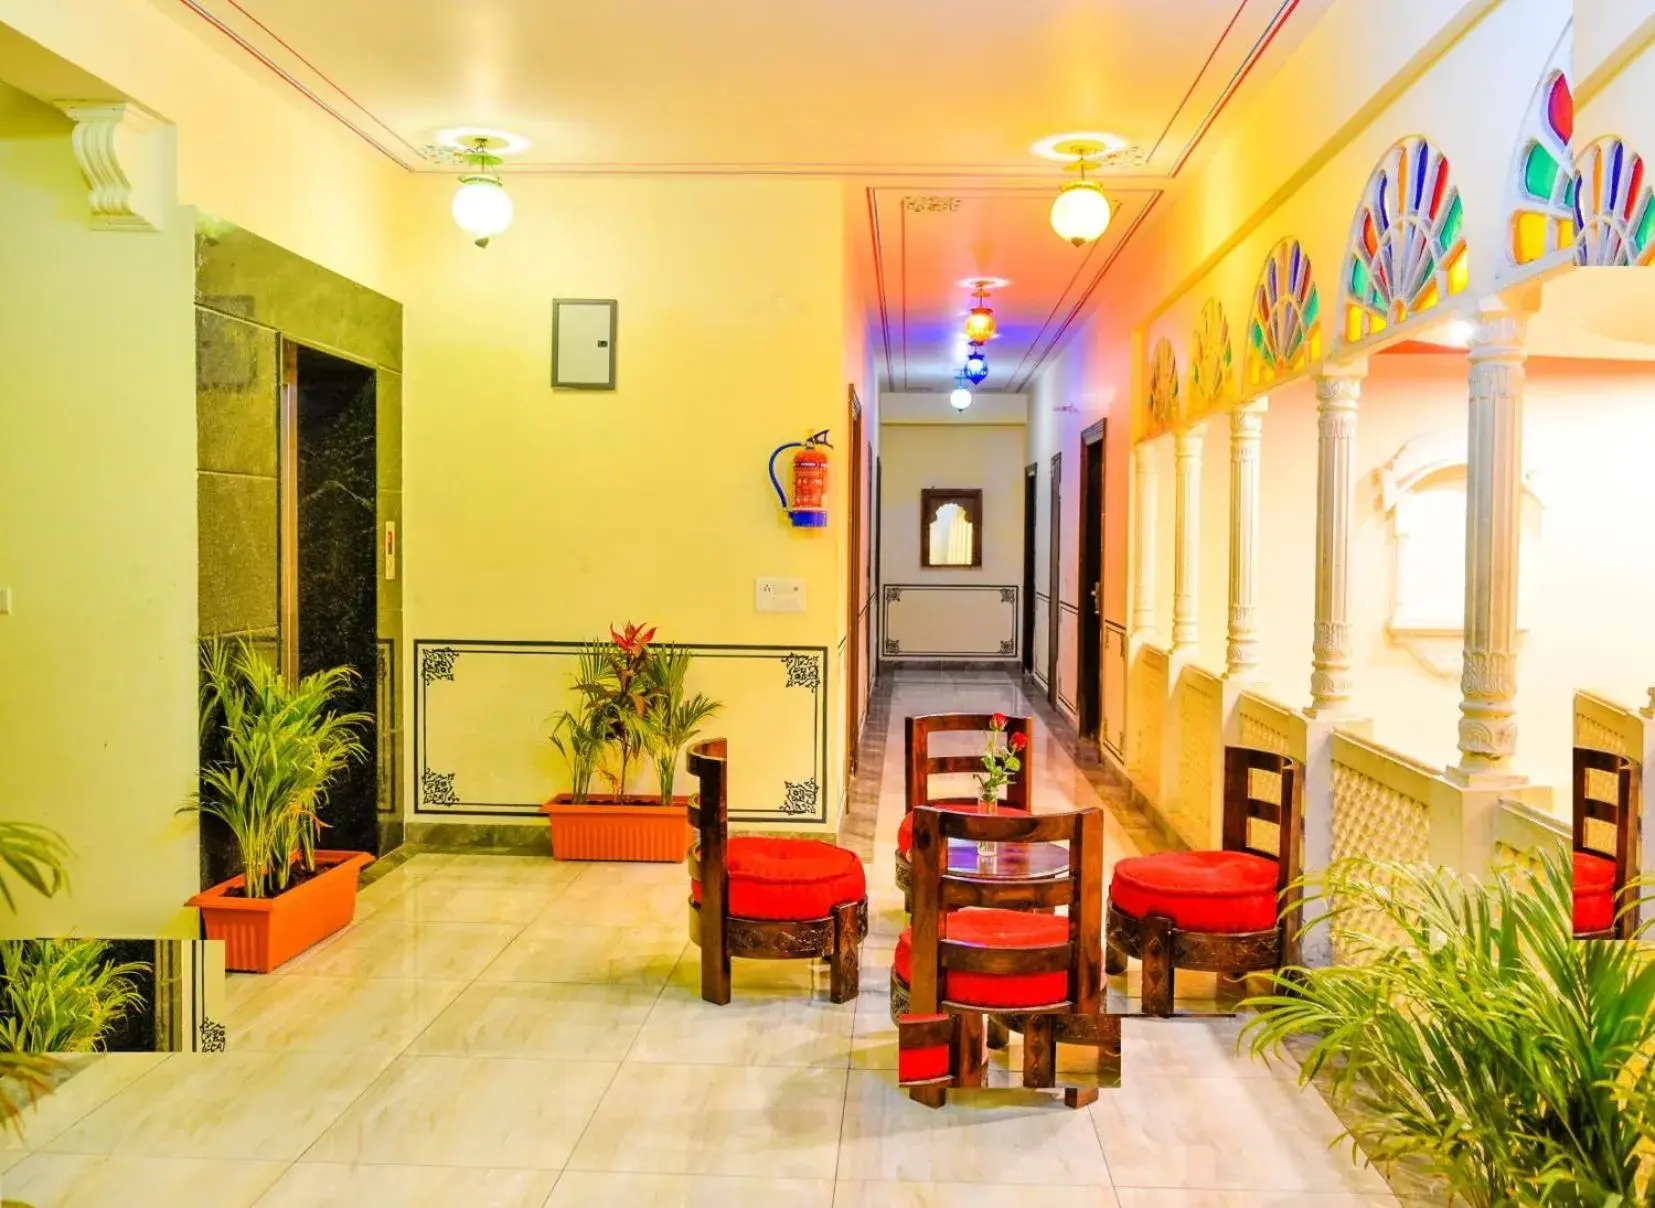 Lobby or reception in Hotel Laxmi Niwas